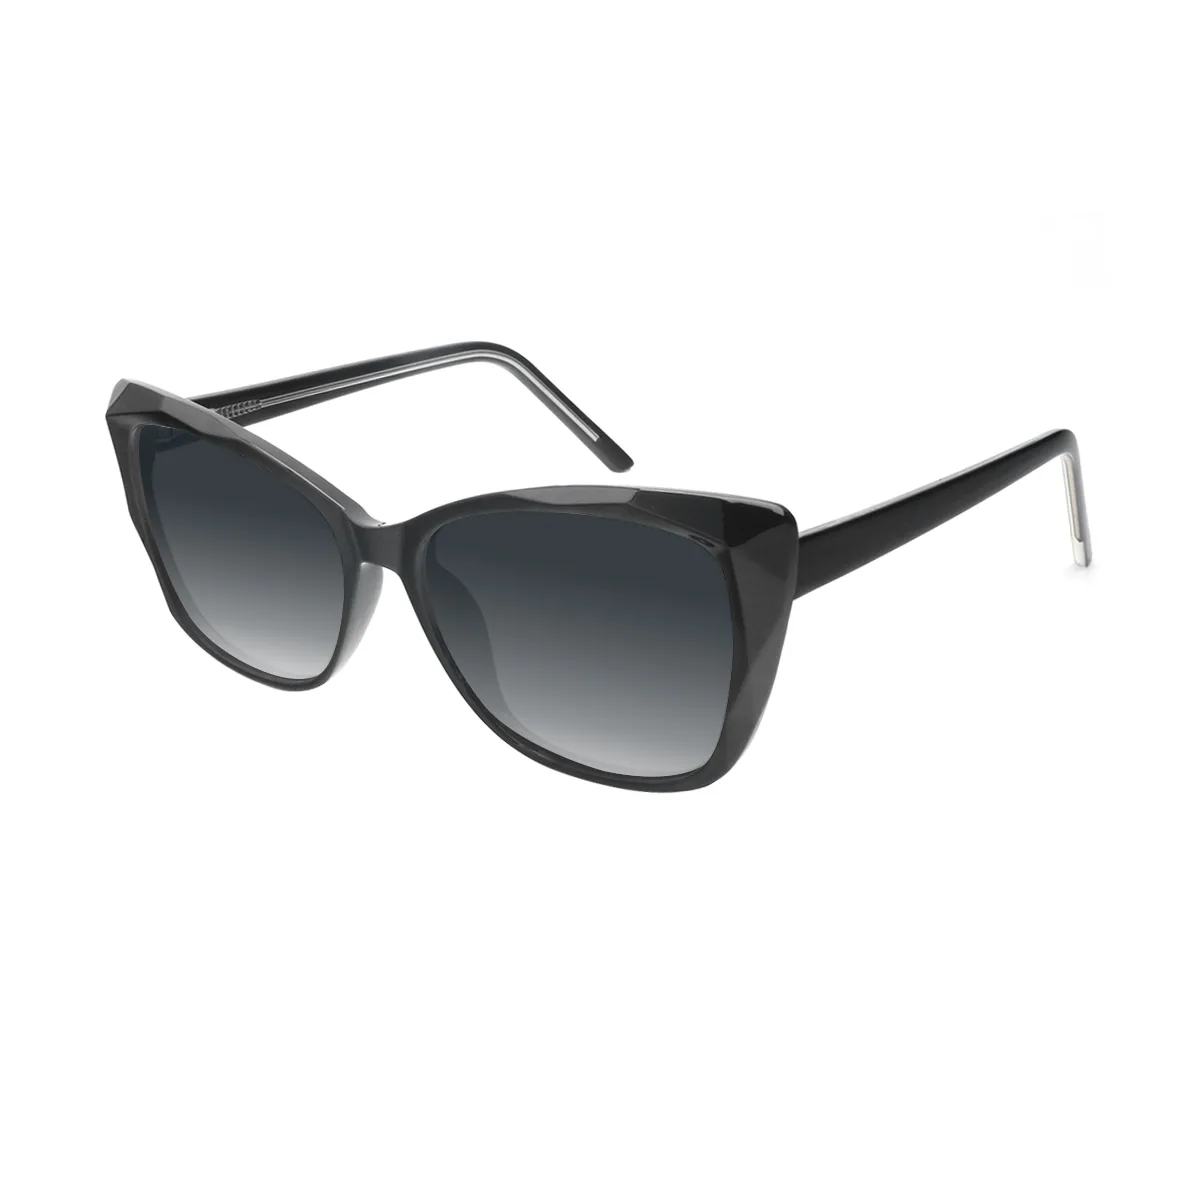 Bethel - Cat-eye Black Sunglasses for Women